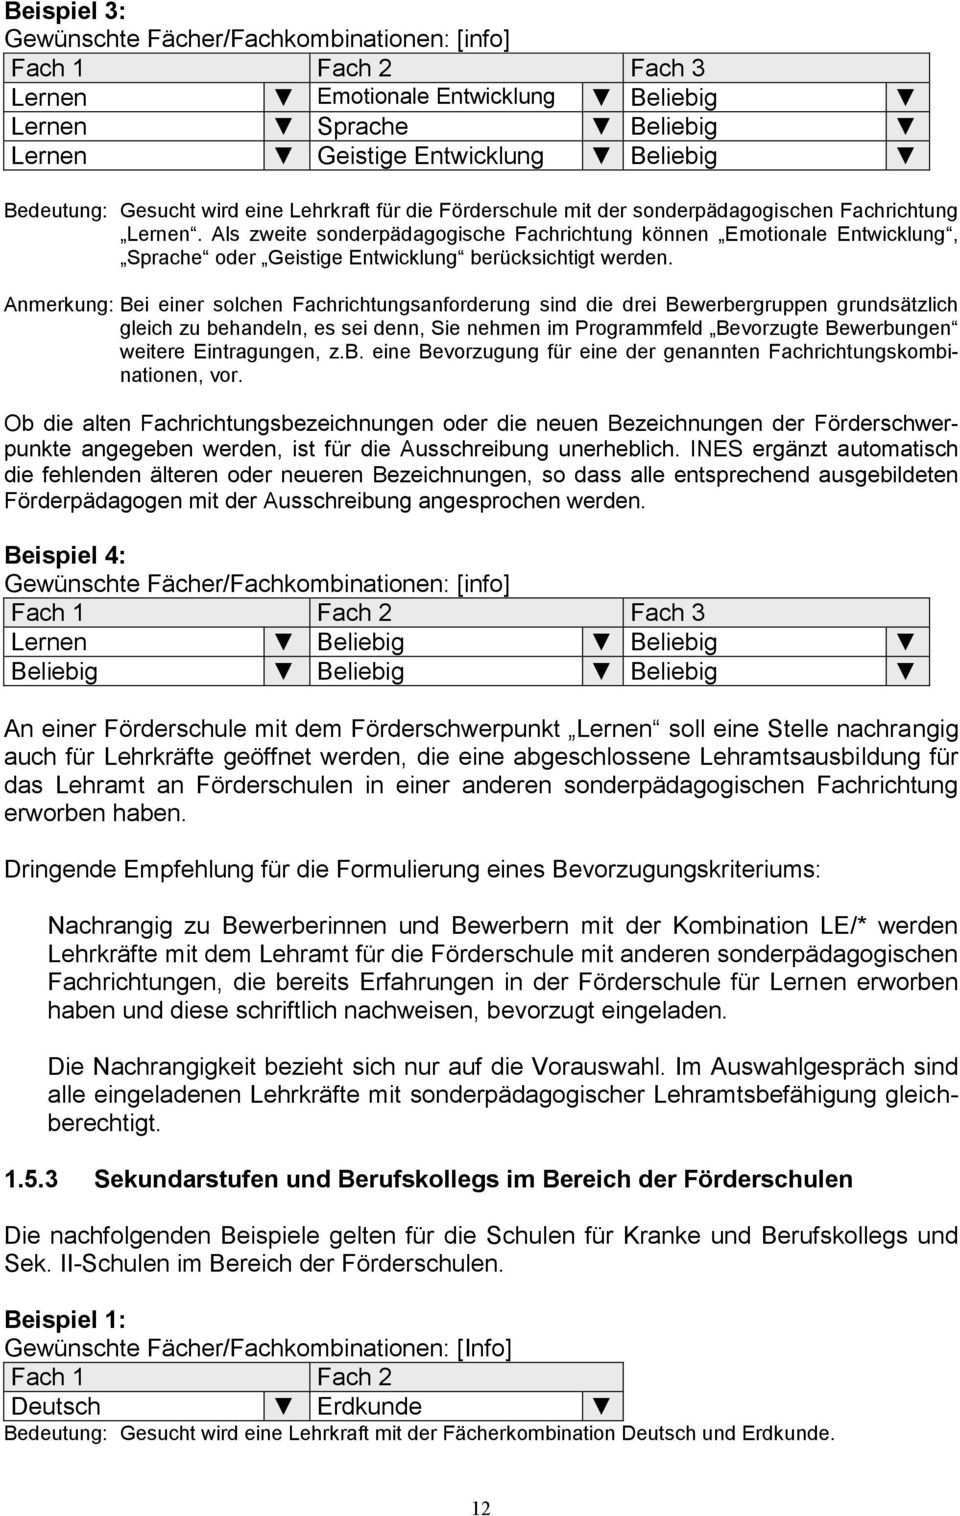 Handbuch Lehrereinstellung An Grundschulen Schulversuch Primus Und Forderschulen Pdf Kostenfreier Download